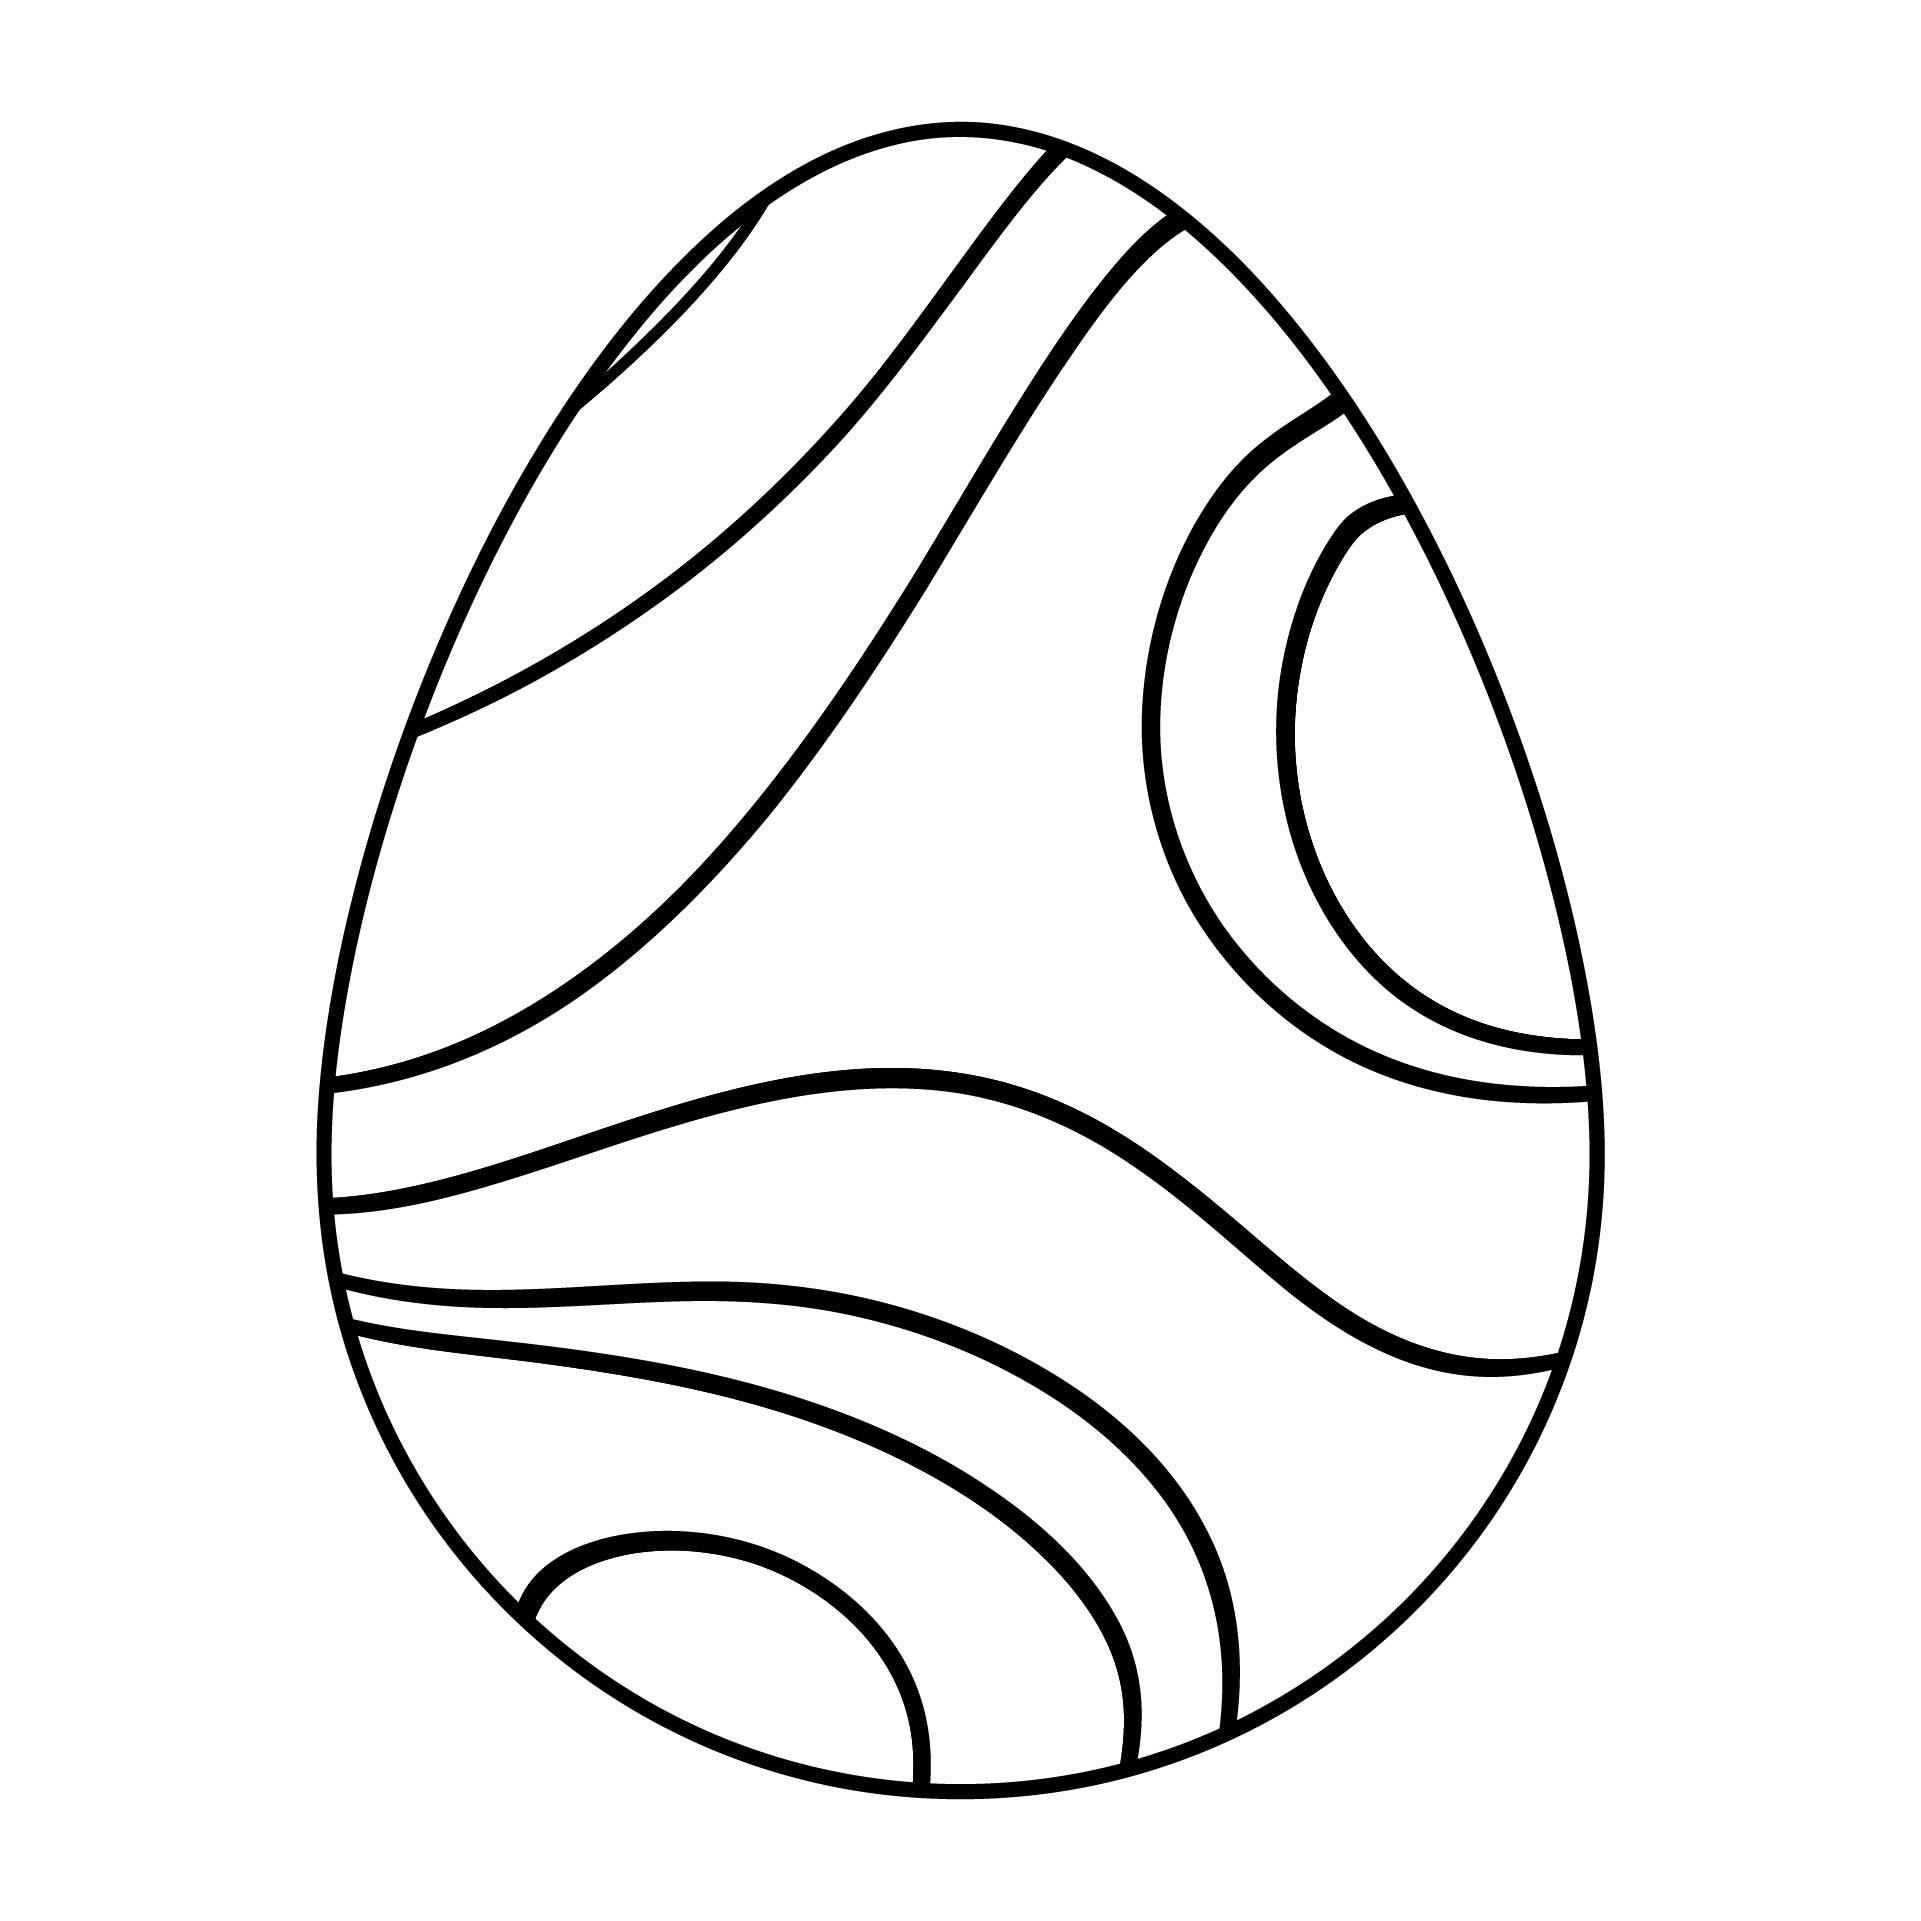 Printable Easter Egg Pattern